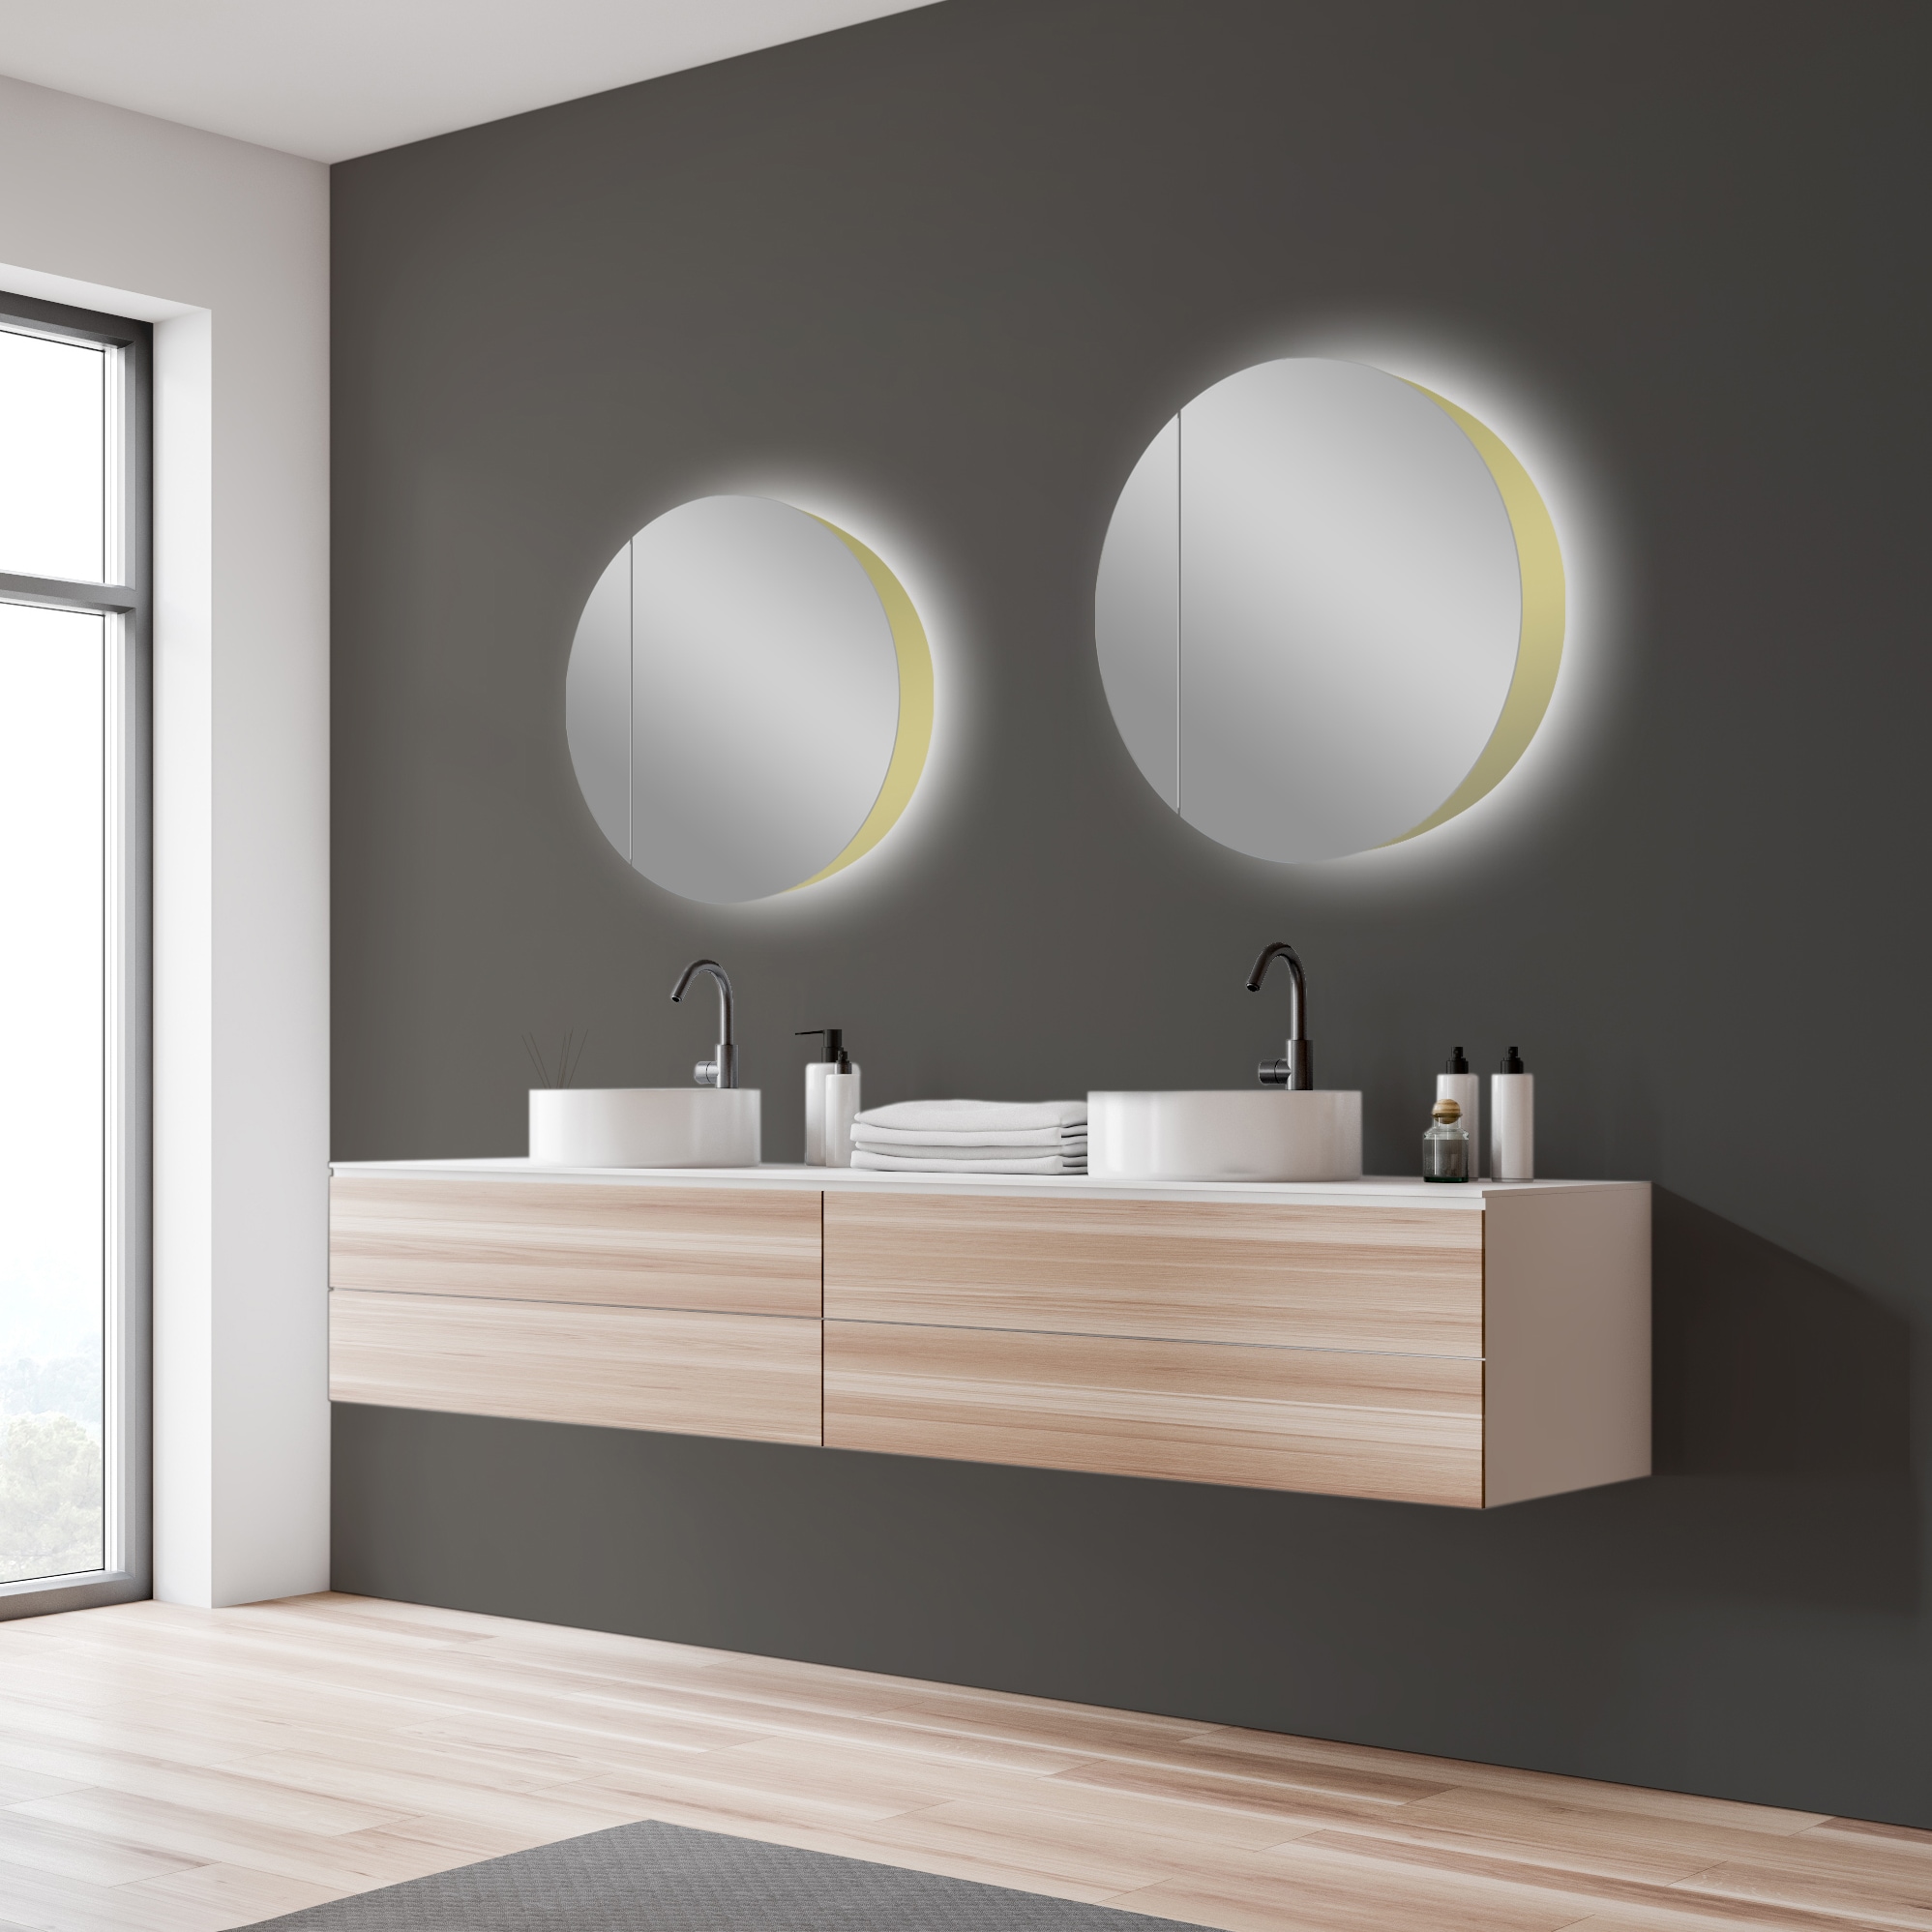 Talos Spiegelschrank »Picasso Style, Spiegelschrank gold/weiß, Ø 60cm«, Rahmen aus hochwertiger Aluminiumlegierung